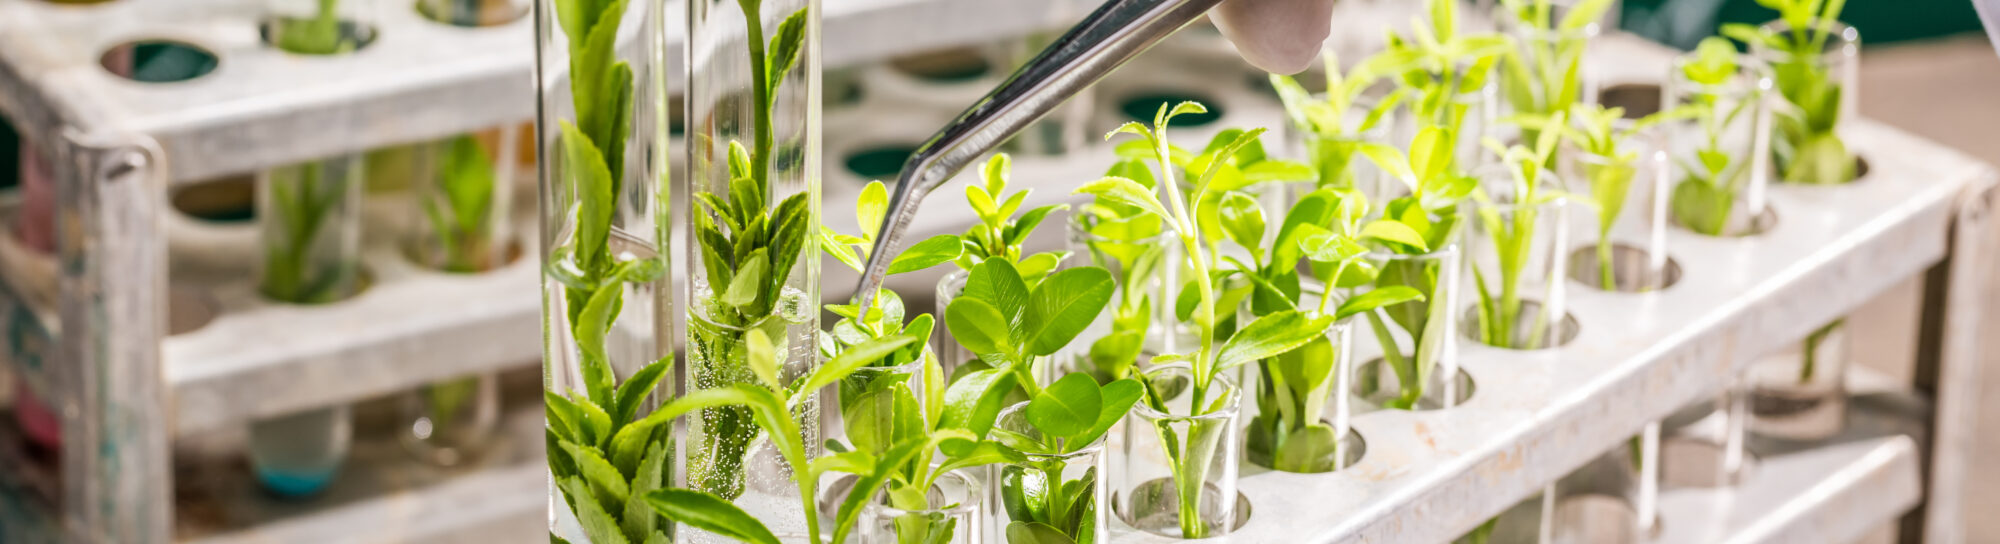 Le monde a-t-il vraiment besoin de plantes obtenues par édition du génome?